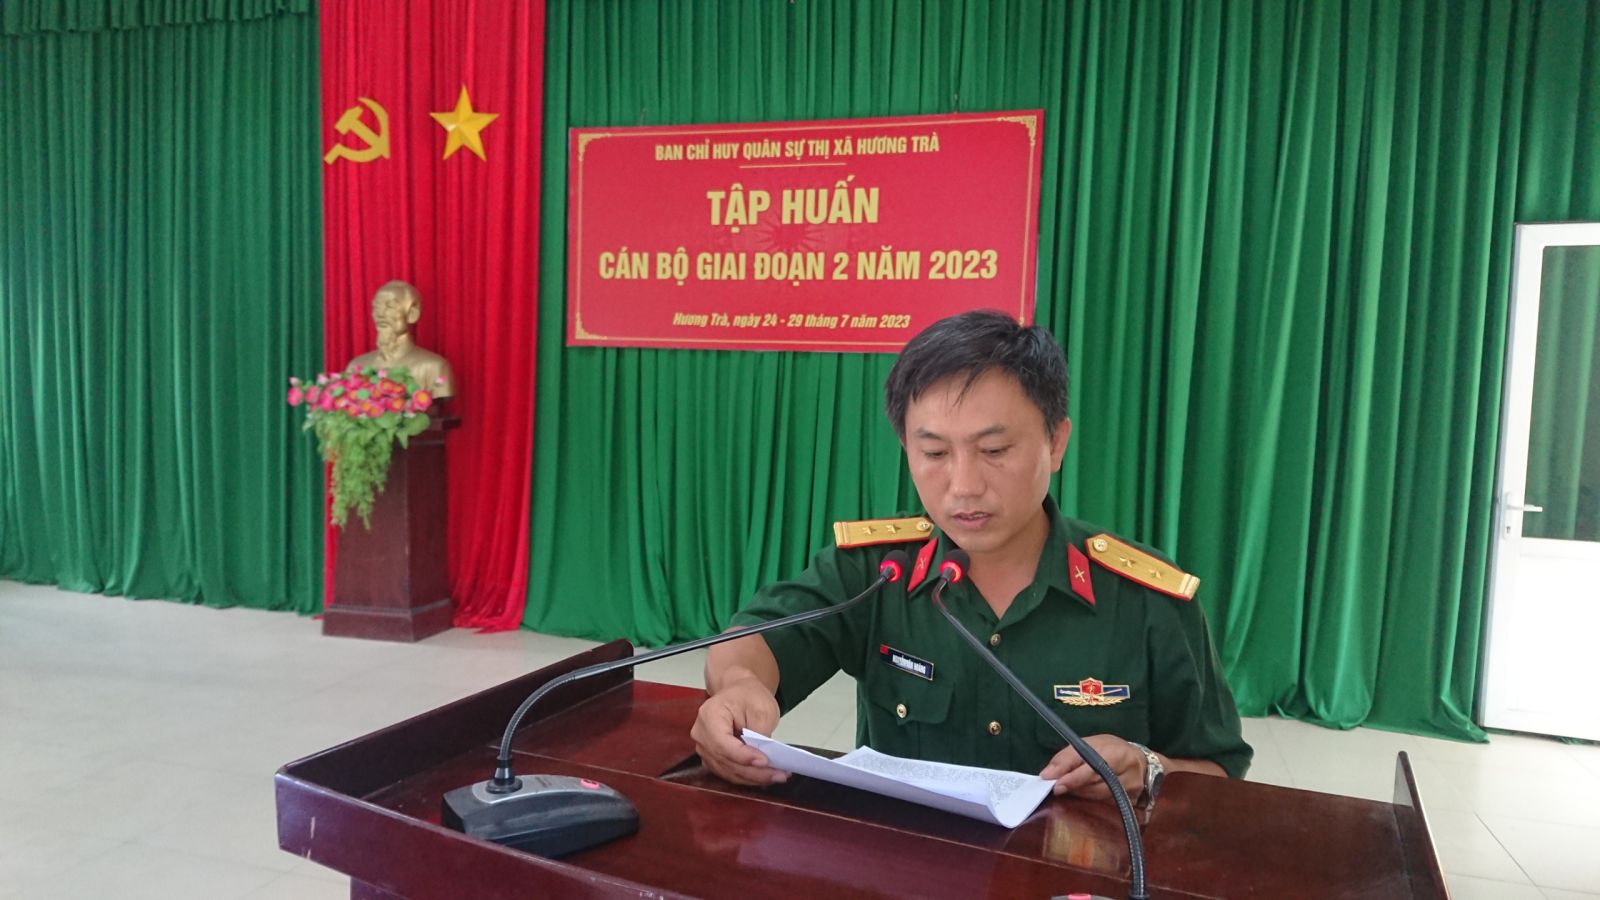 Ban Chỉ huy quân sự thị xã Hương Trà tổ chức tập huấn cán bộ giai đoạn 2 năm 2023